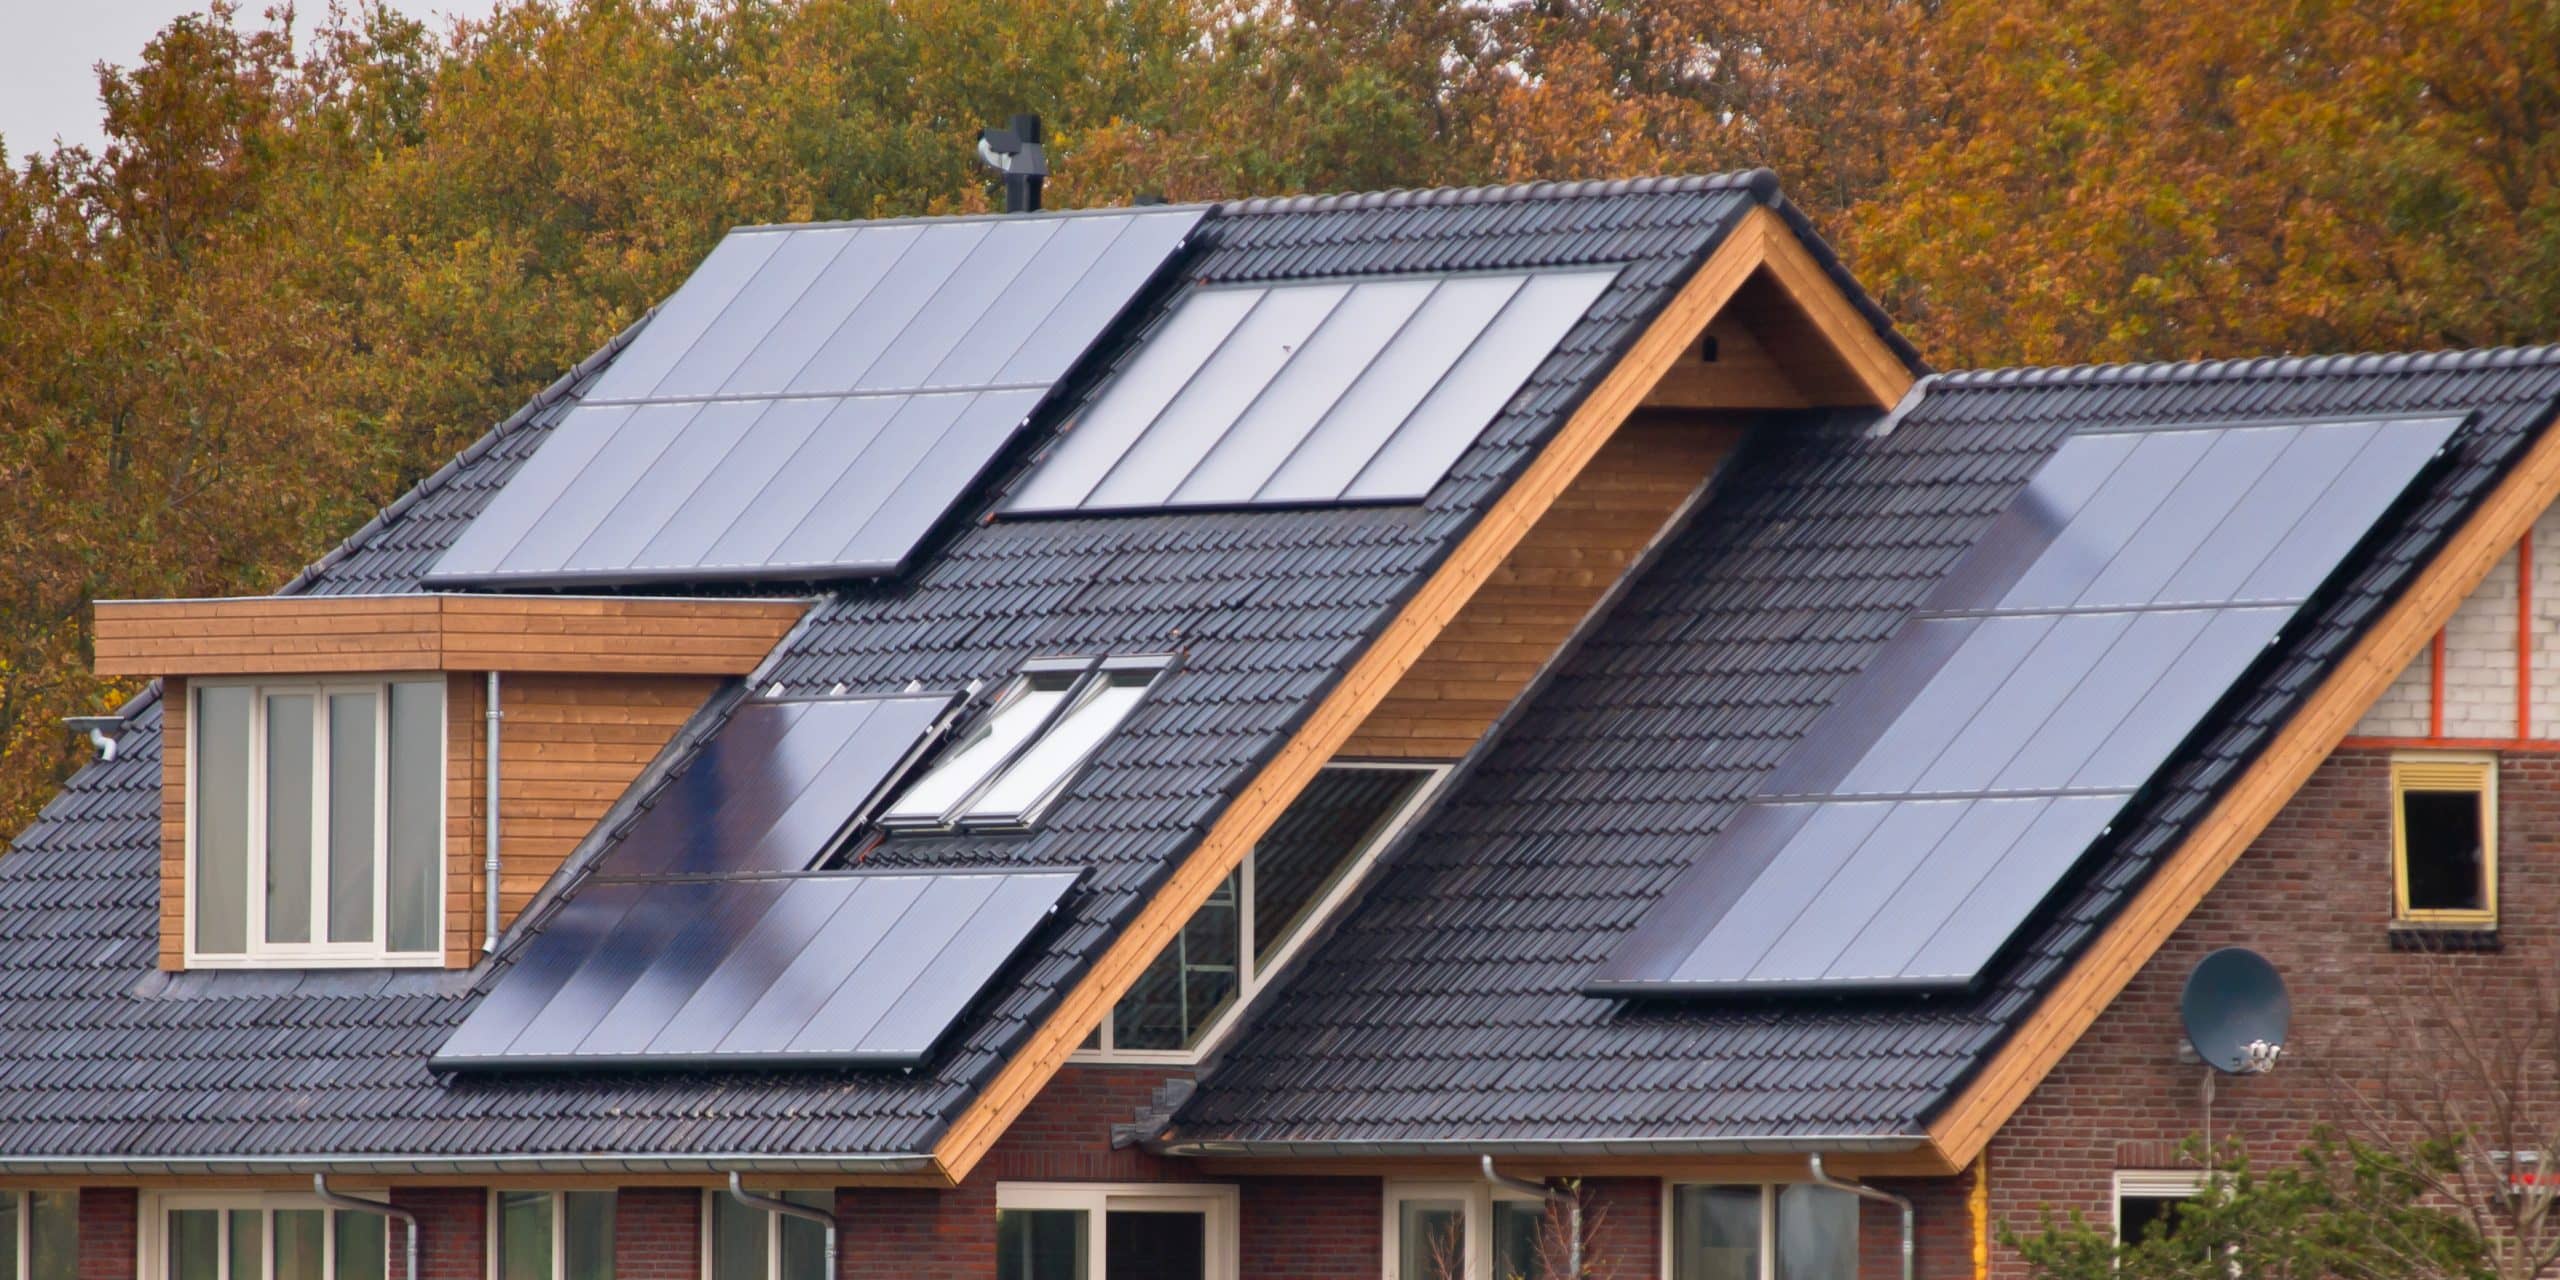 solar panels on house 2021 08 26 16 38 12 utc scaled